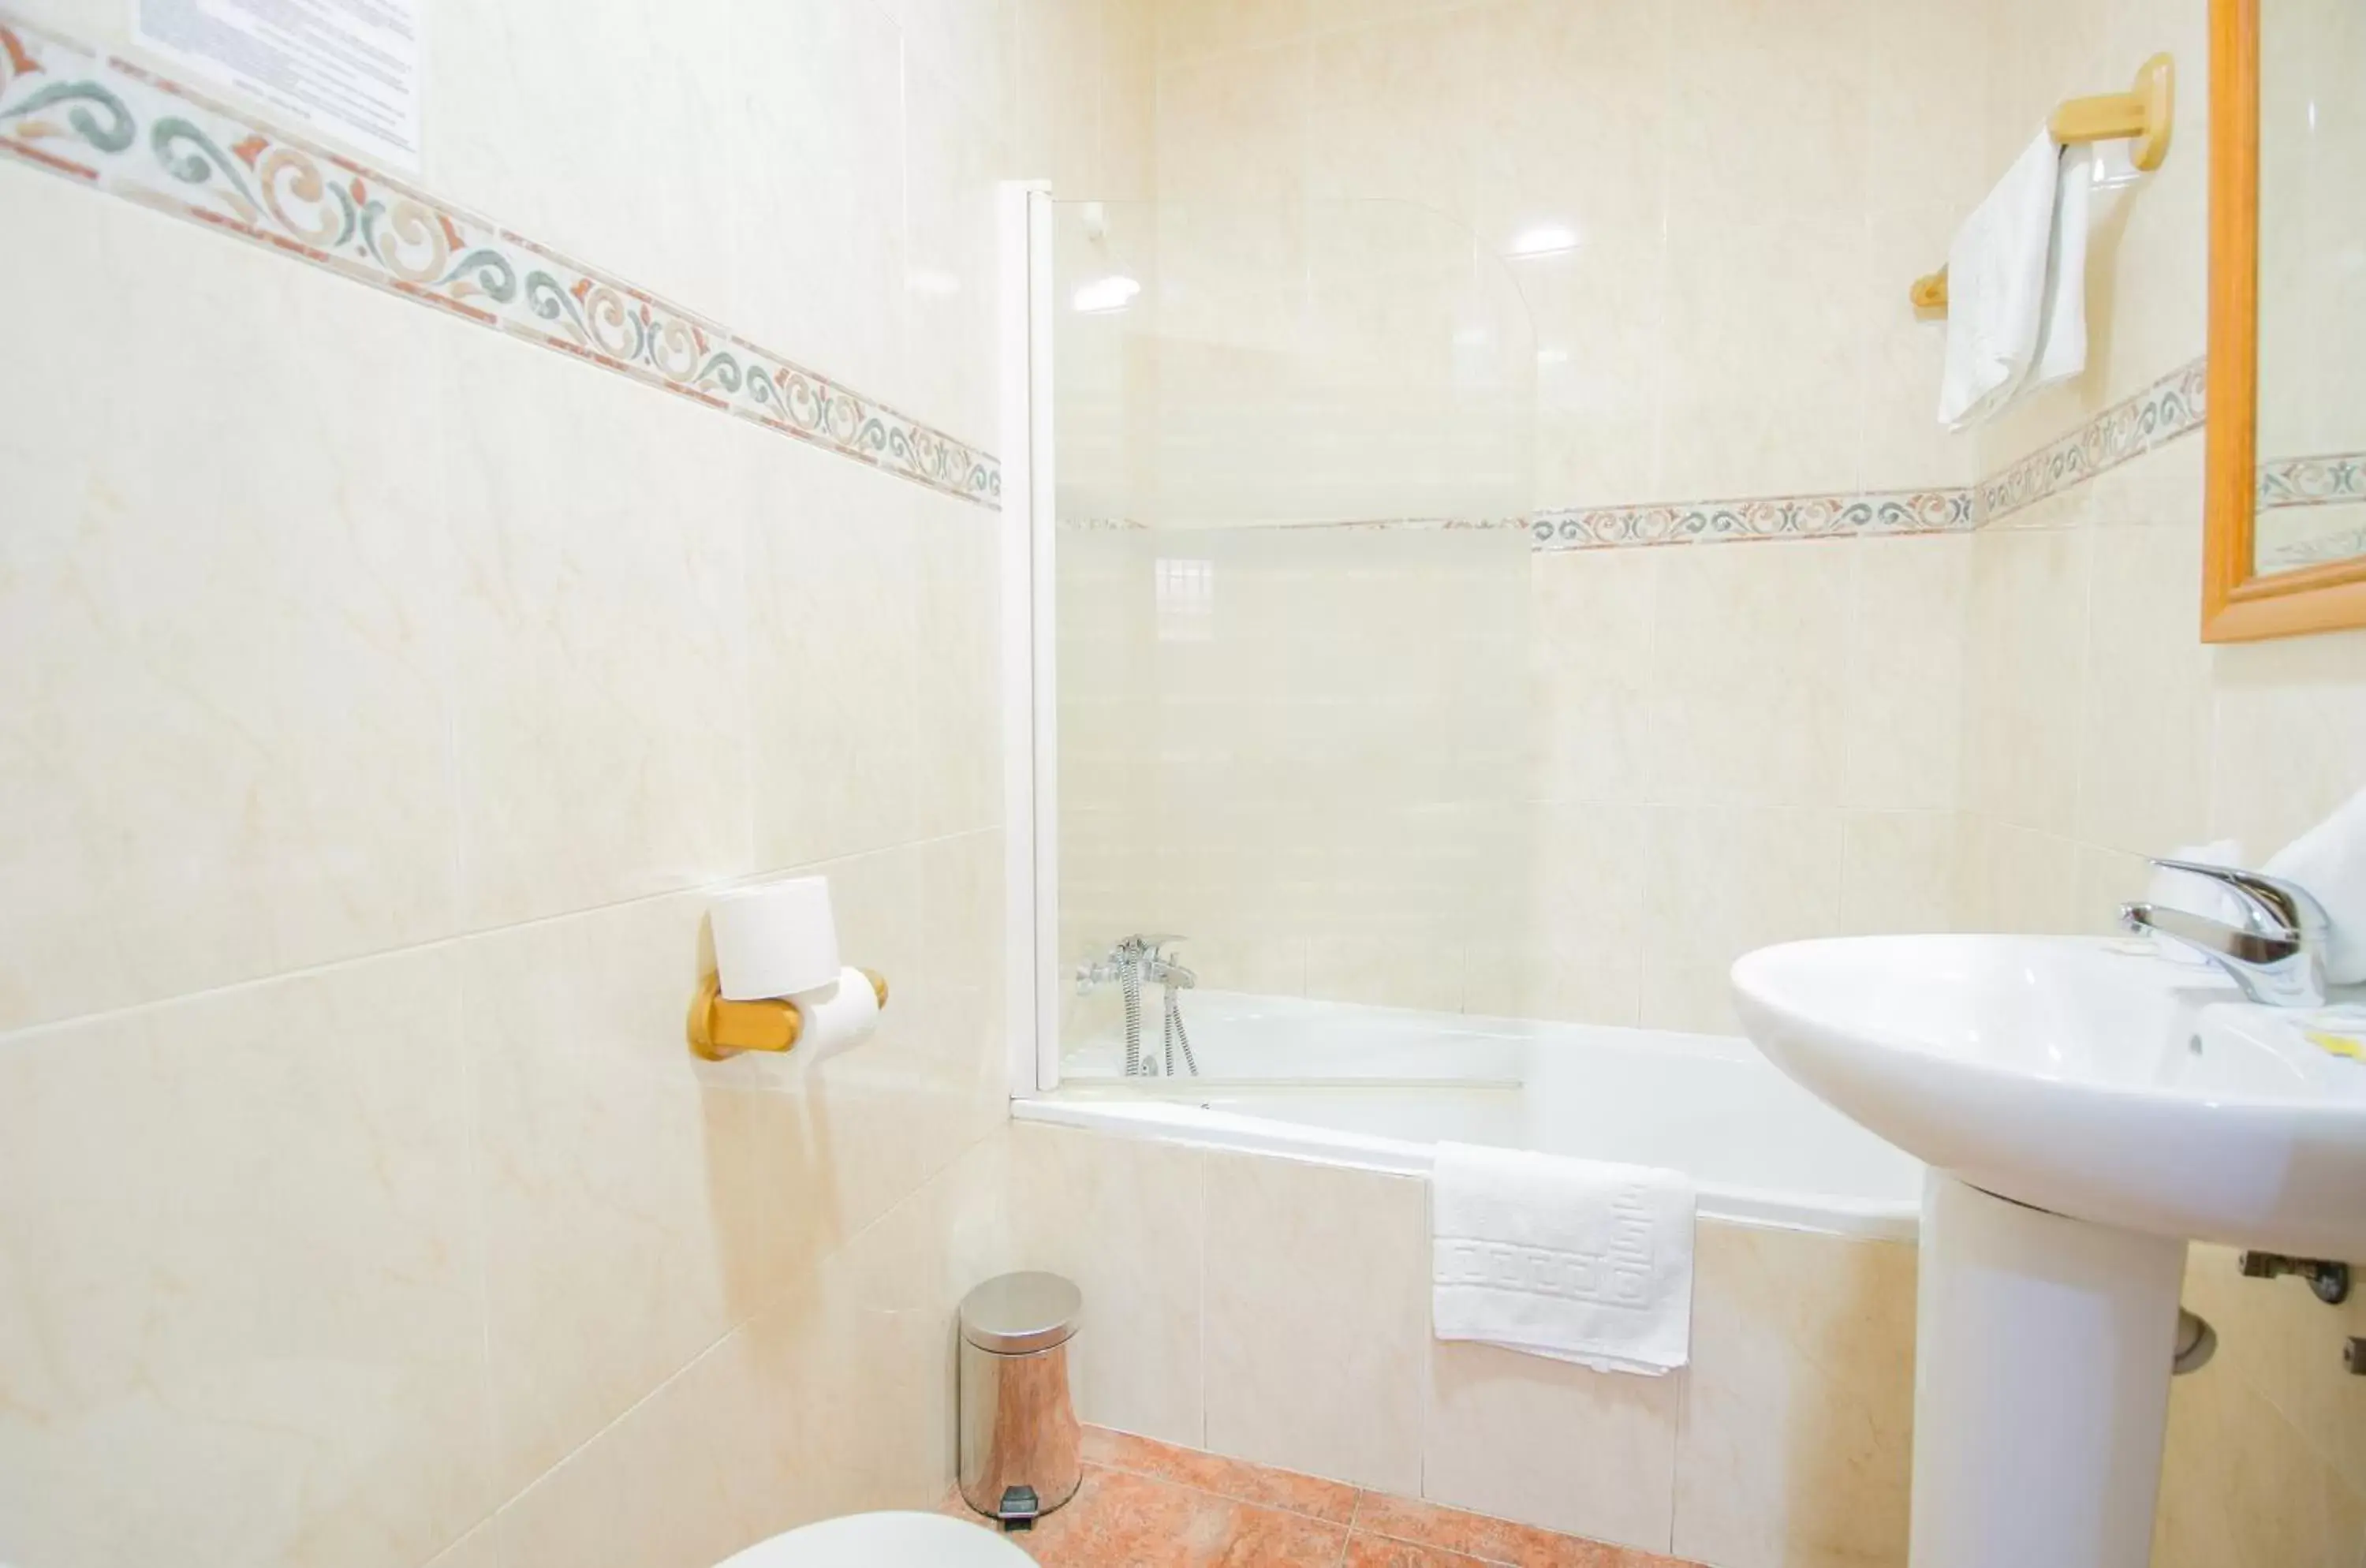 Decorative detail, Bathroom in Hotel Solymar